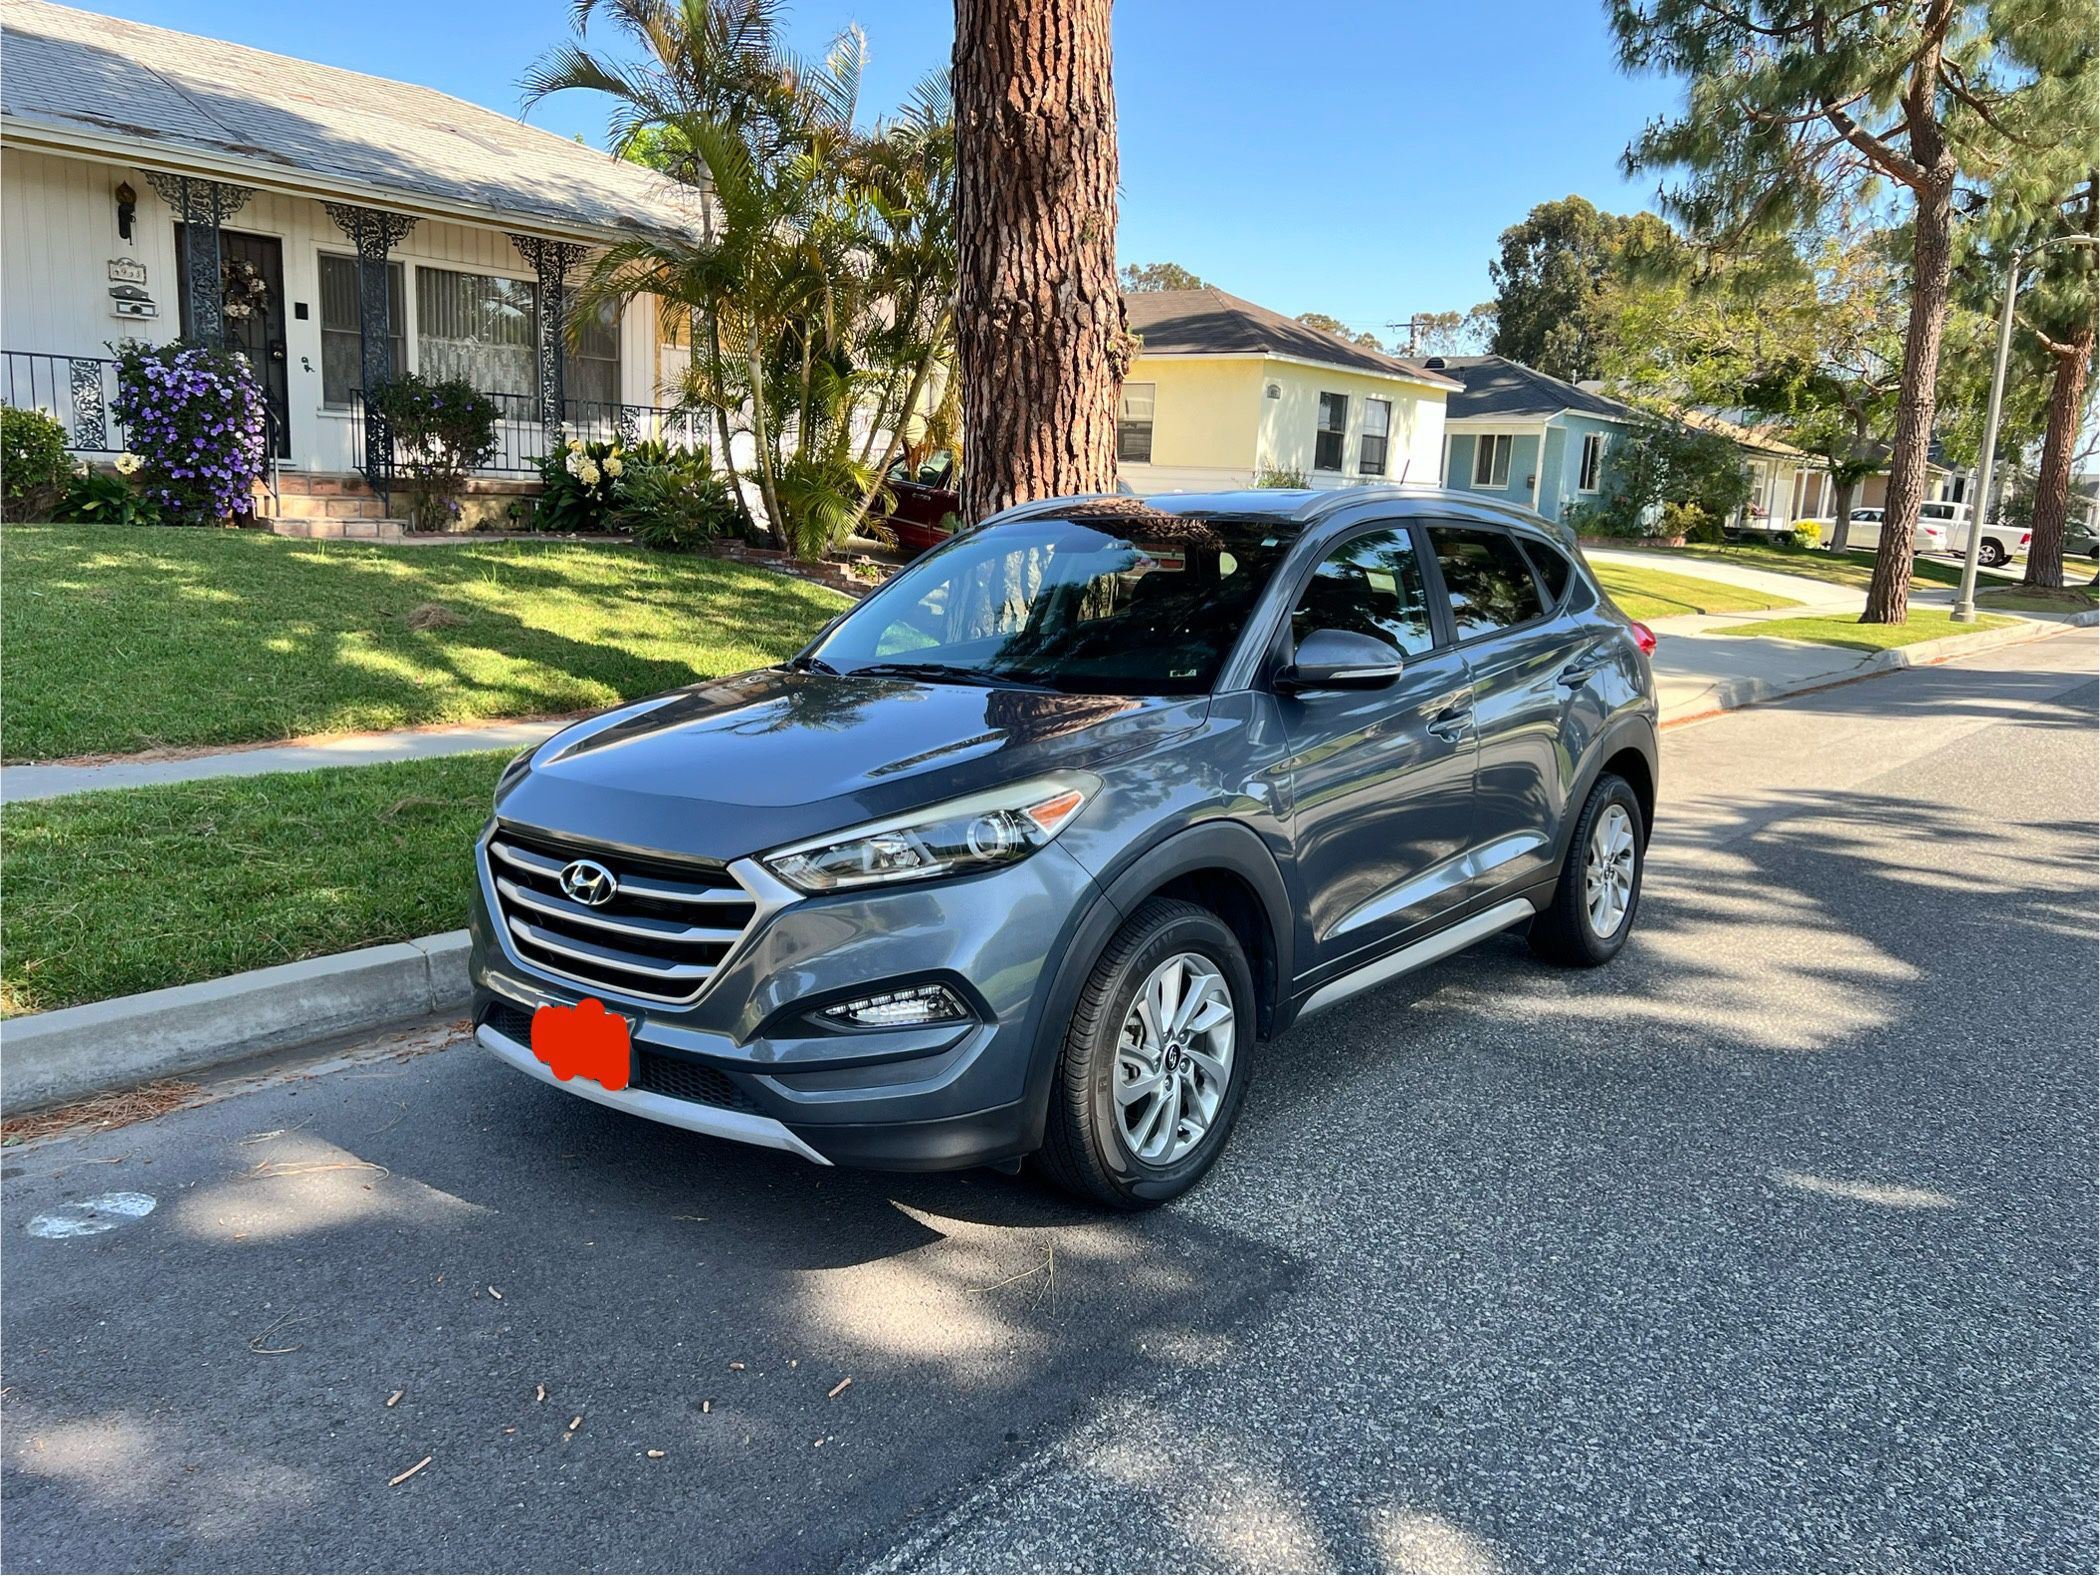 2017 Hyundai Tucson